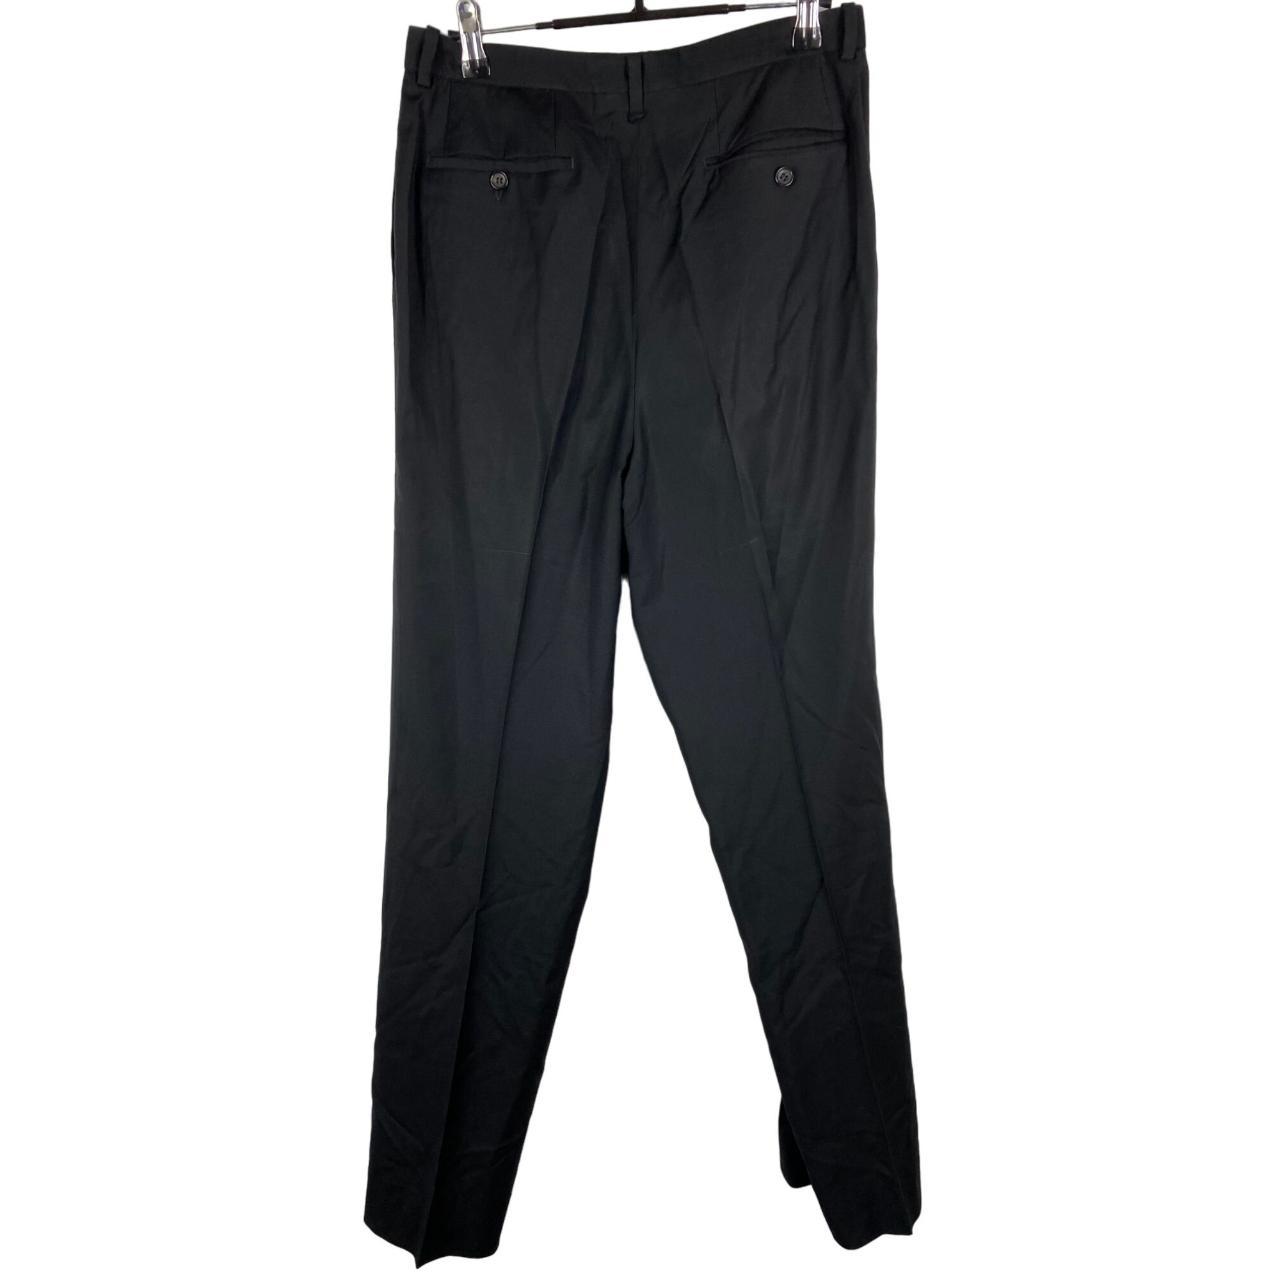 Jil Sander Tailor Made Trouser Dress Pants Black... - Depop